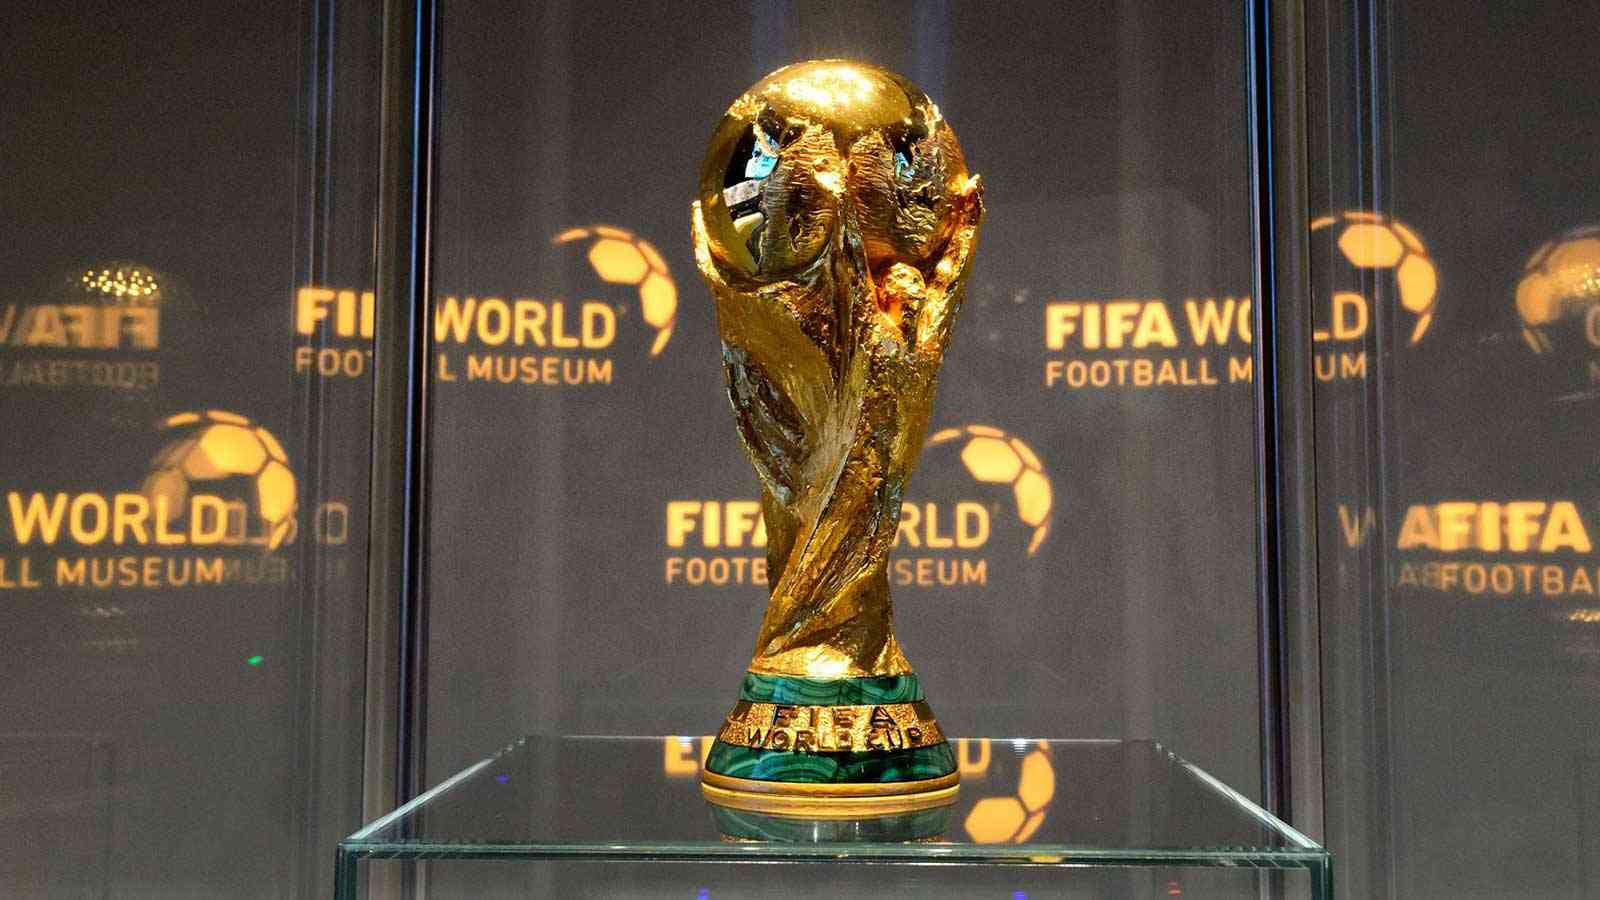 موعد ومكان قرعة كأس العالم مونديال قطر 2022